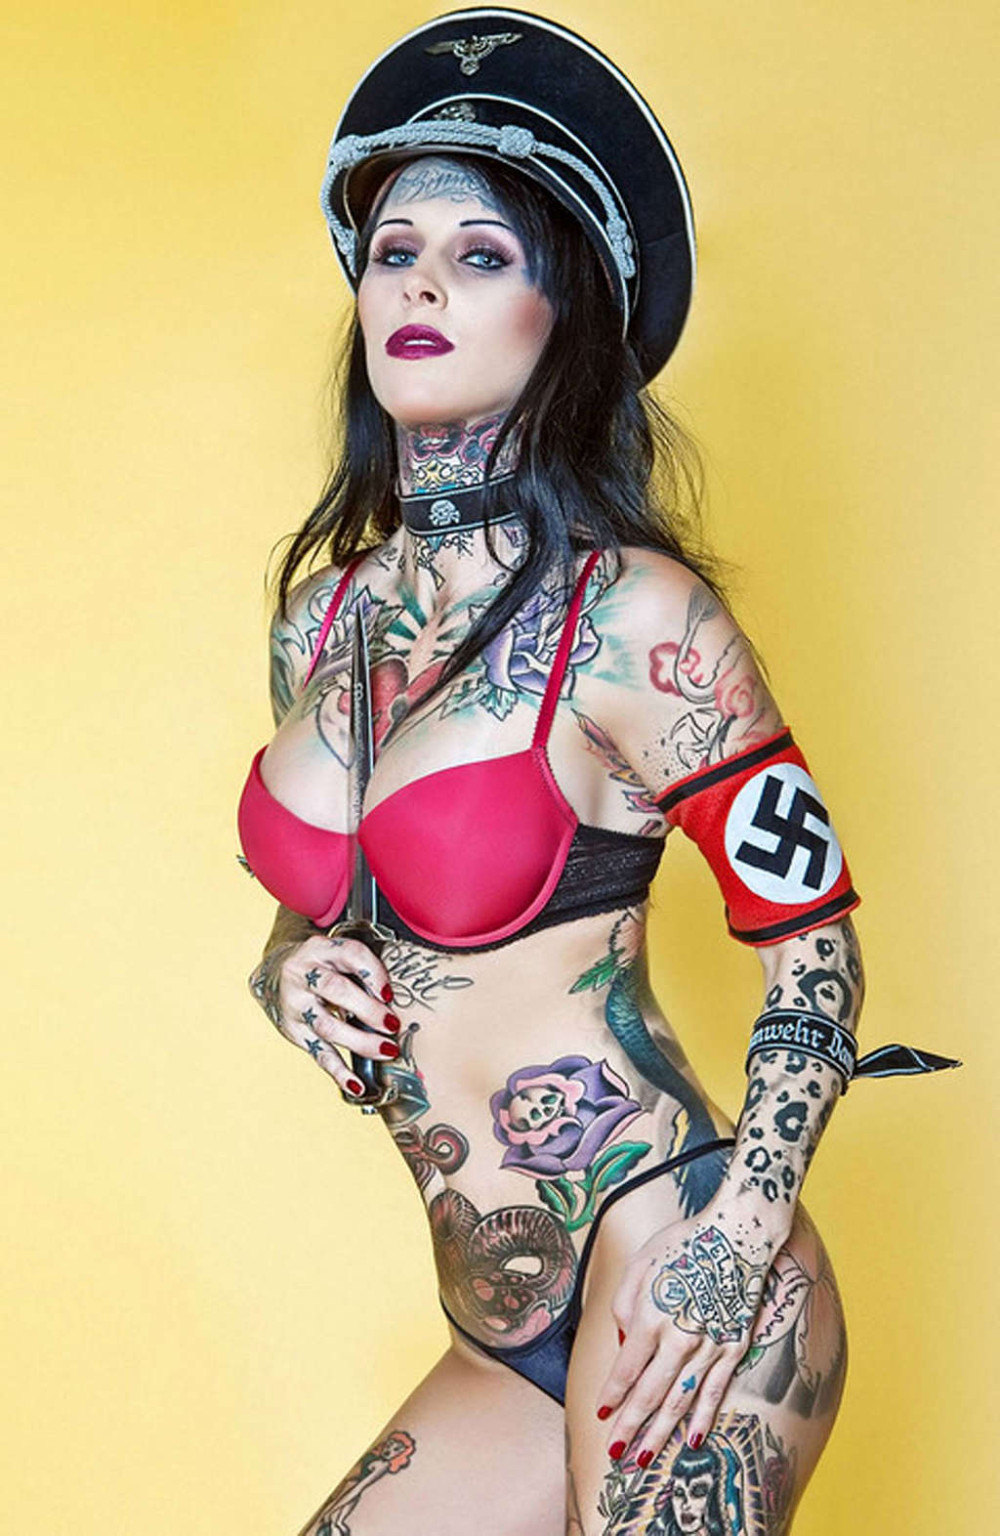 Michelle bombshell mostrando su cuerpo caliente y tatuajes sexy
 #75354611